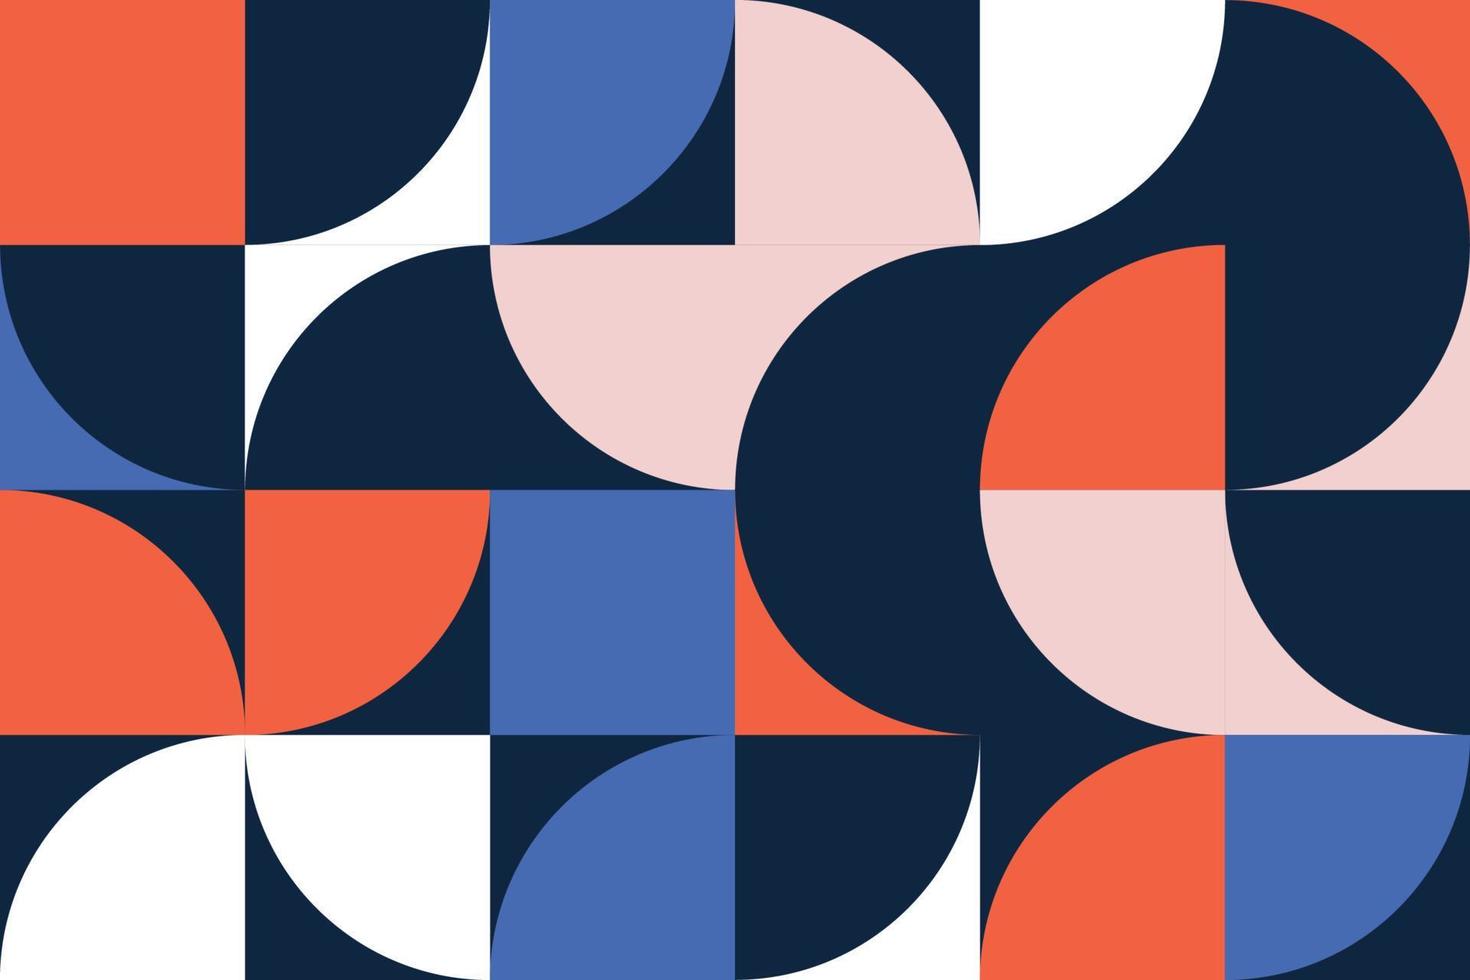 padrões sem emenda geométricos coloridos no estilo bauhaus. fundo azulejo decorativo abstrato com quadrados, semicírculos, formas de geometria hilf-círculos vetor